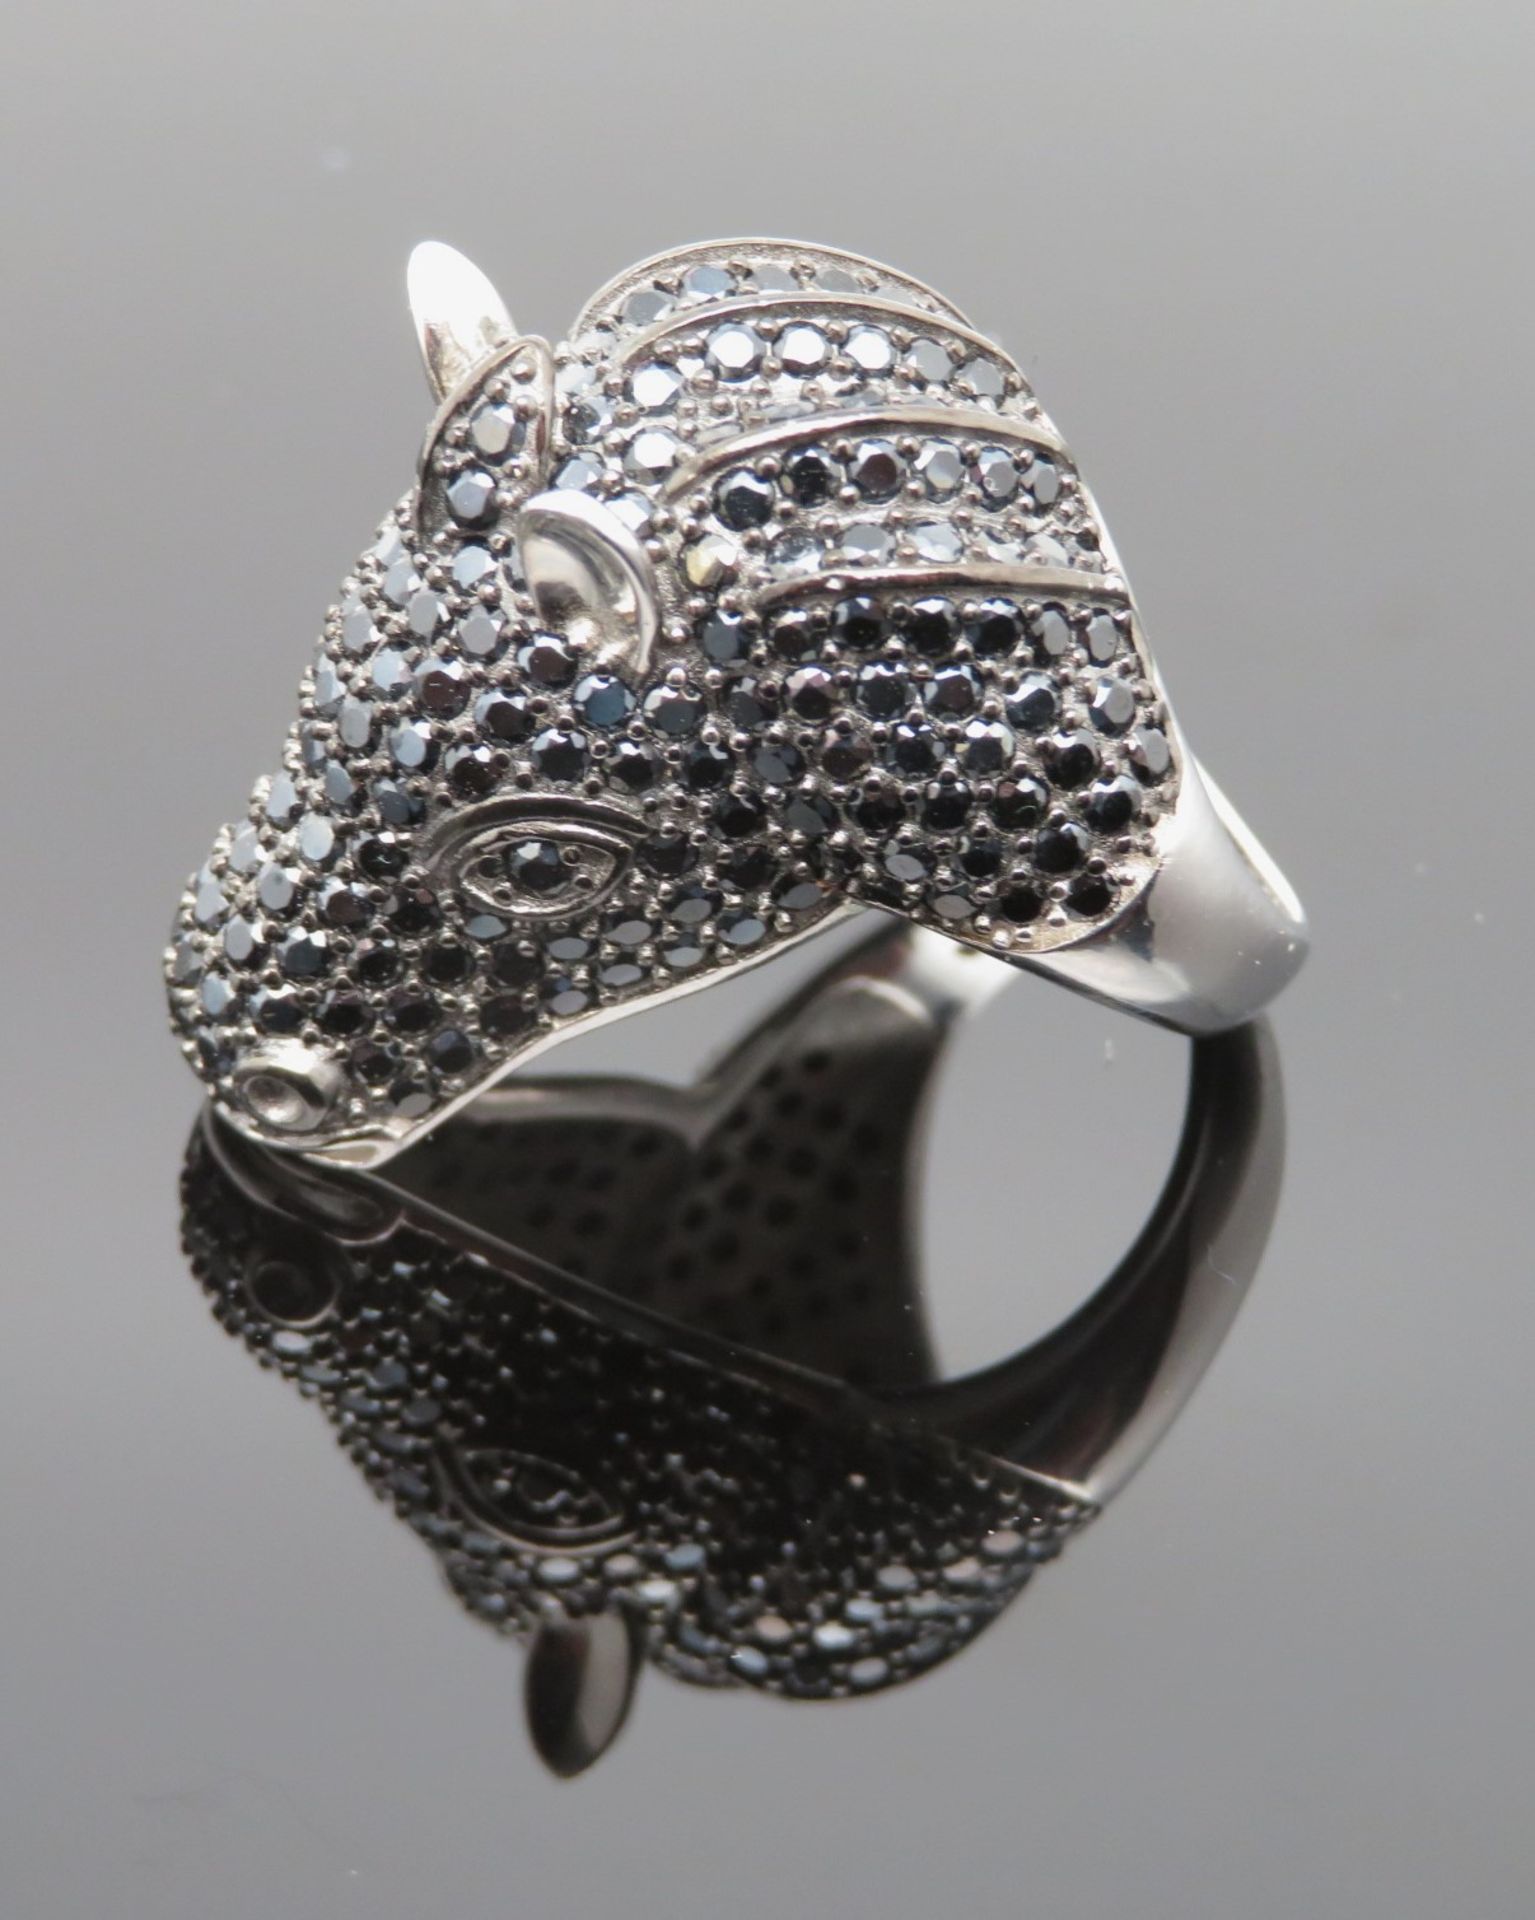 Statement Ring in Gestalt eines Pferdekopfs, reicher schwarzer Spinellbesatz, Silber 925/000, punzi - Bild 2 aus 2